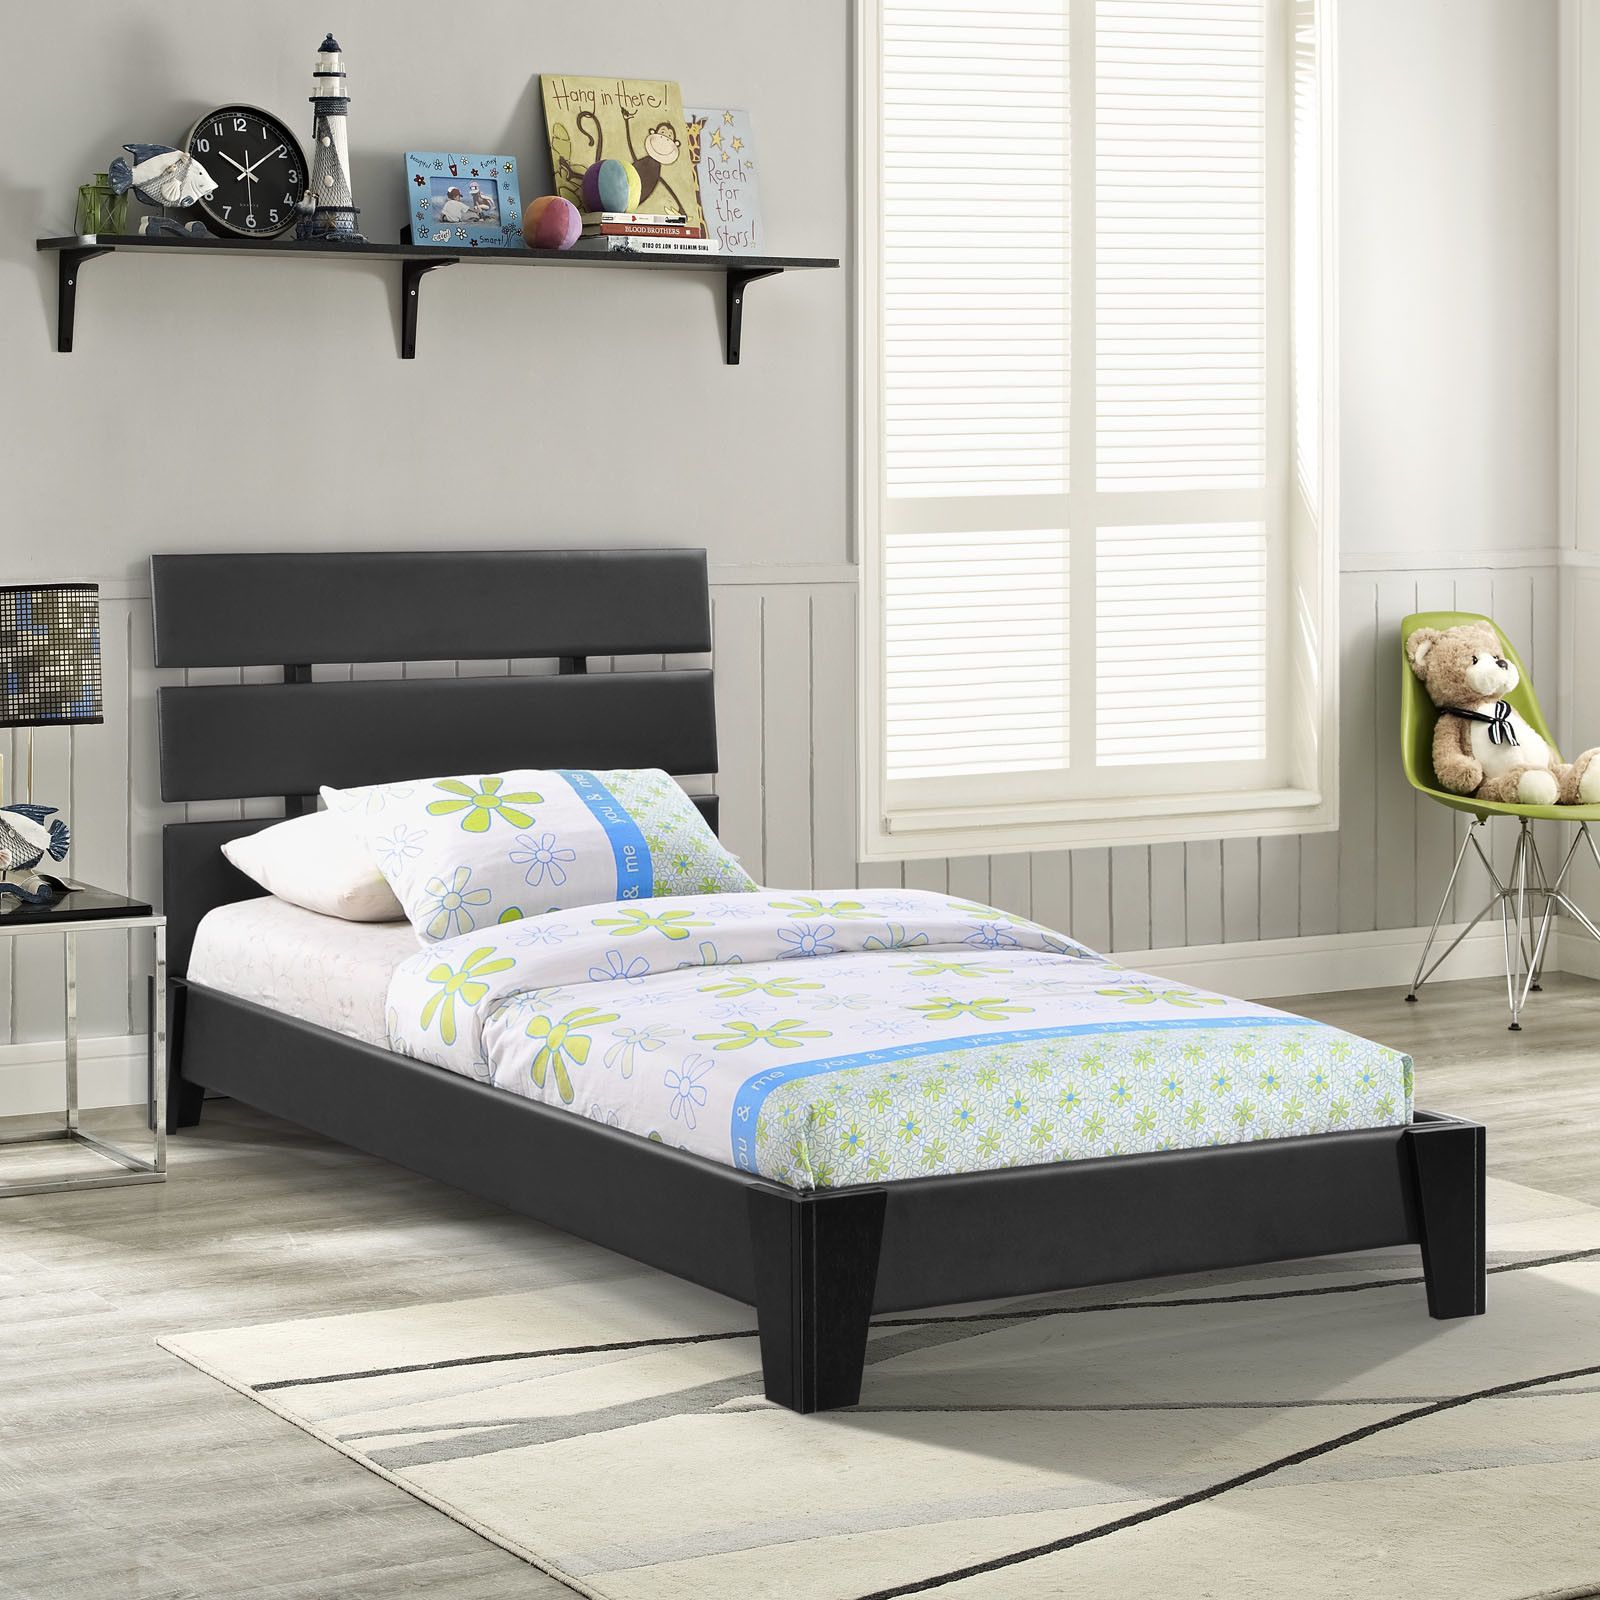 Односпальная кровать, размеры по госту и их вариации, плюсы и минусы